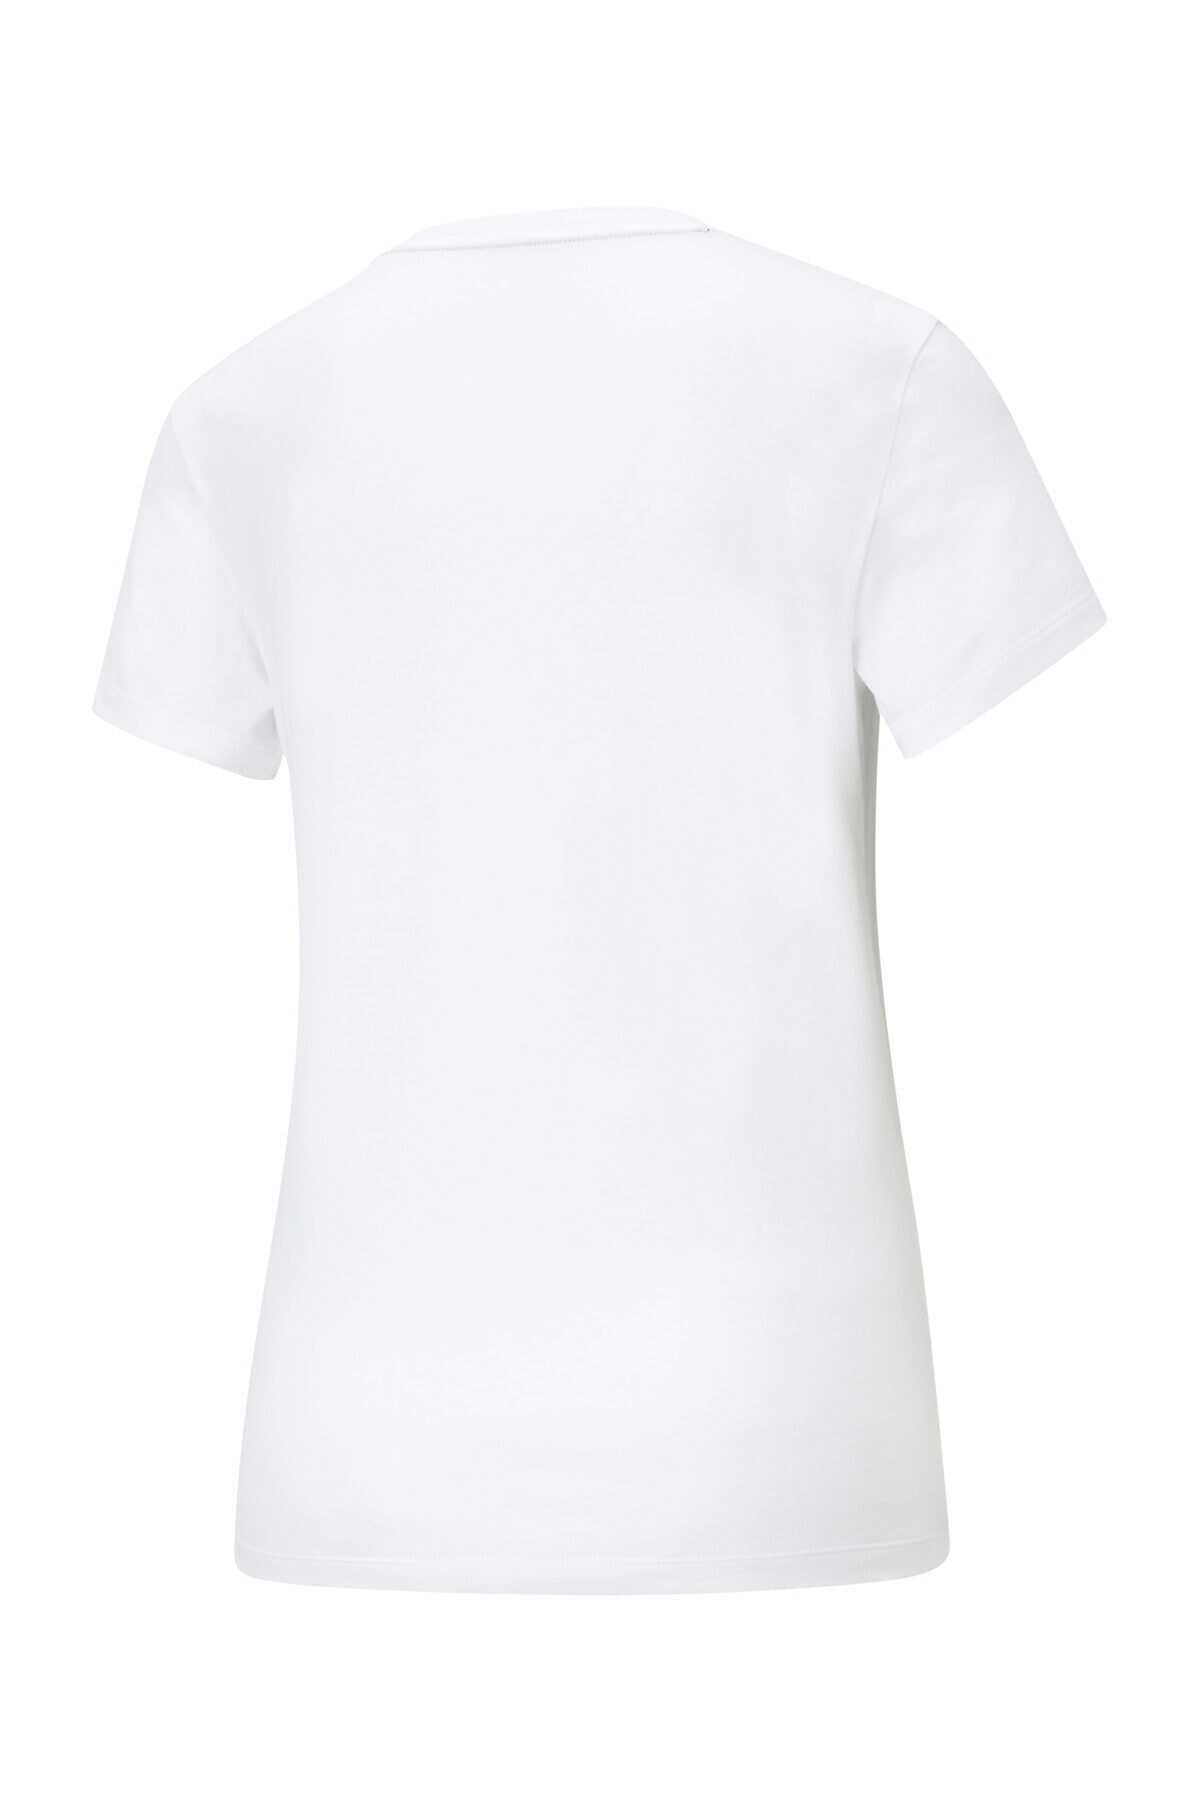 تیشرت یقه گرد چاپ دار زنانه سفید برند Puma 